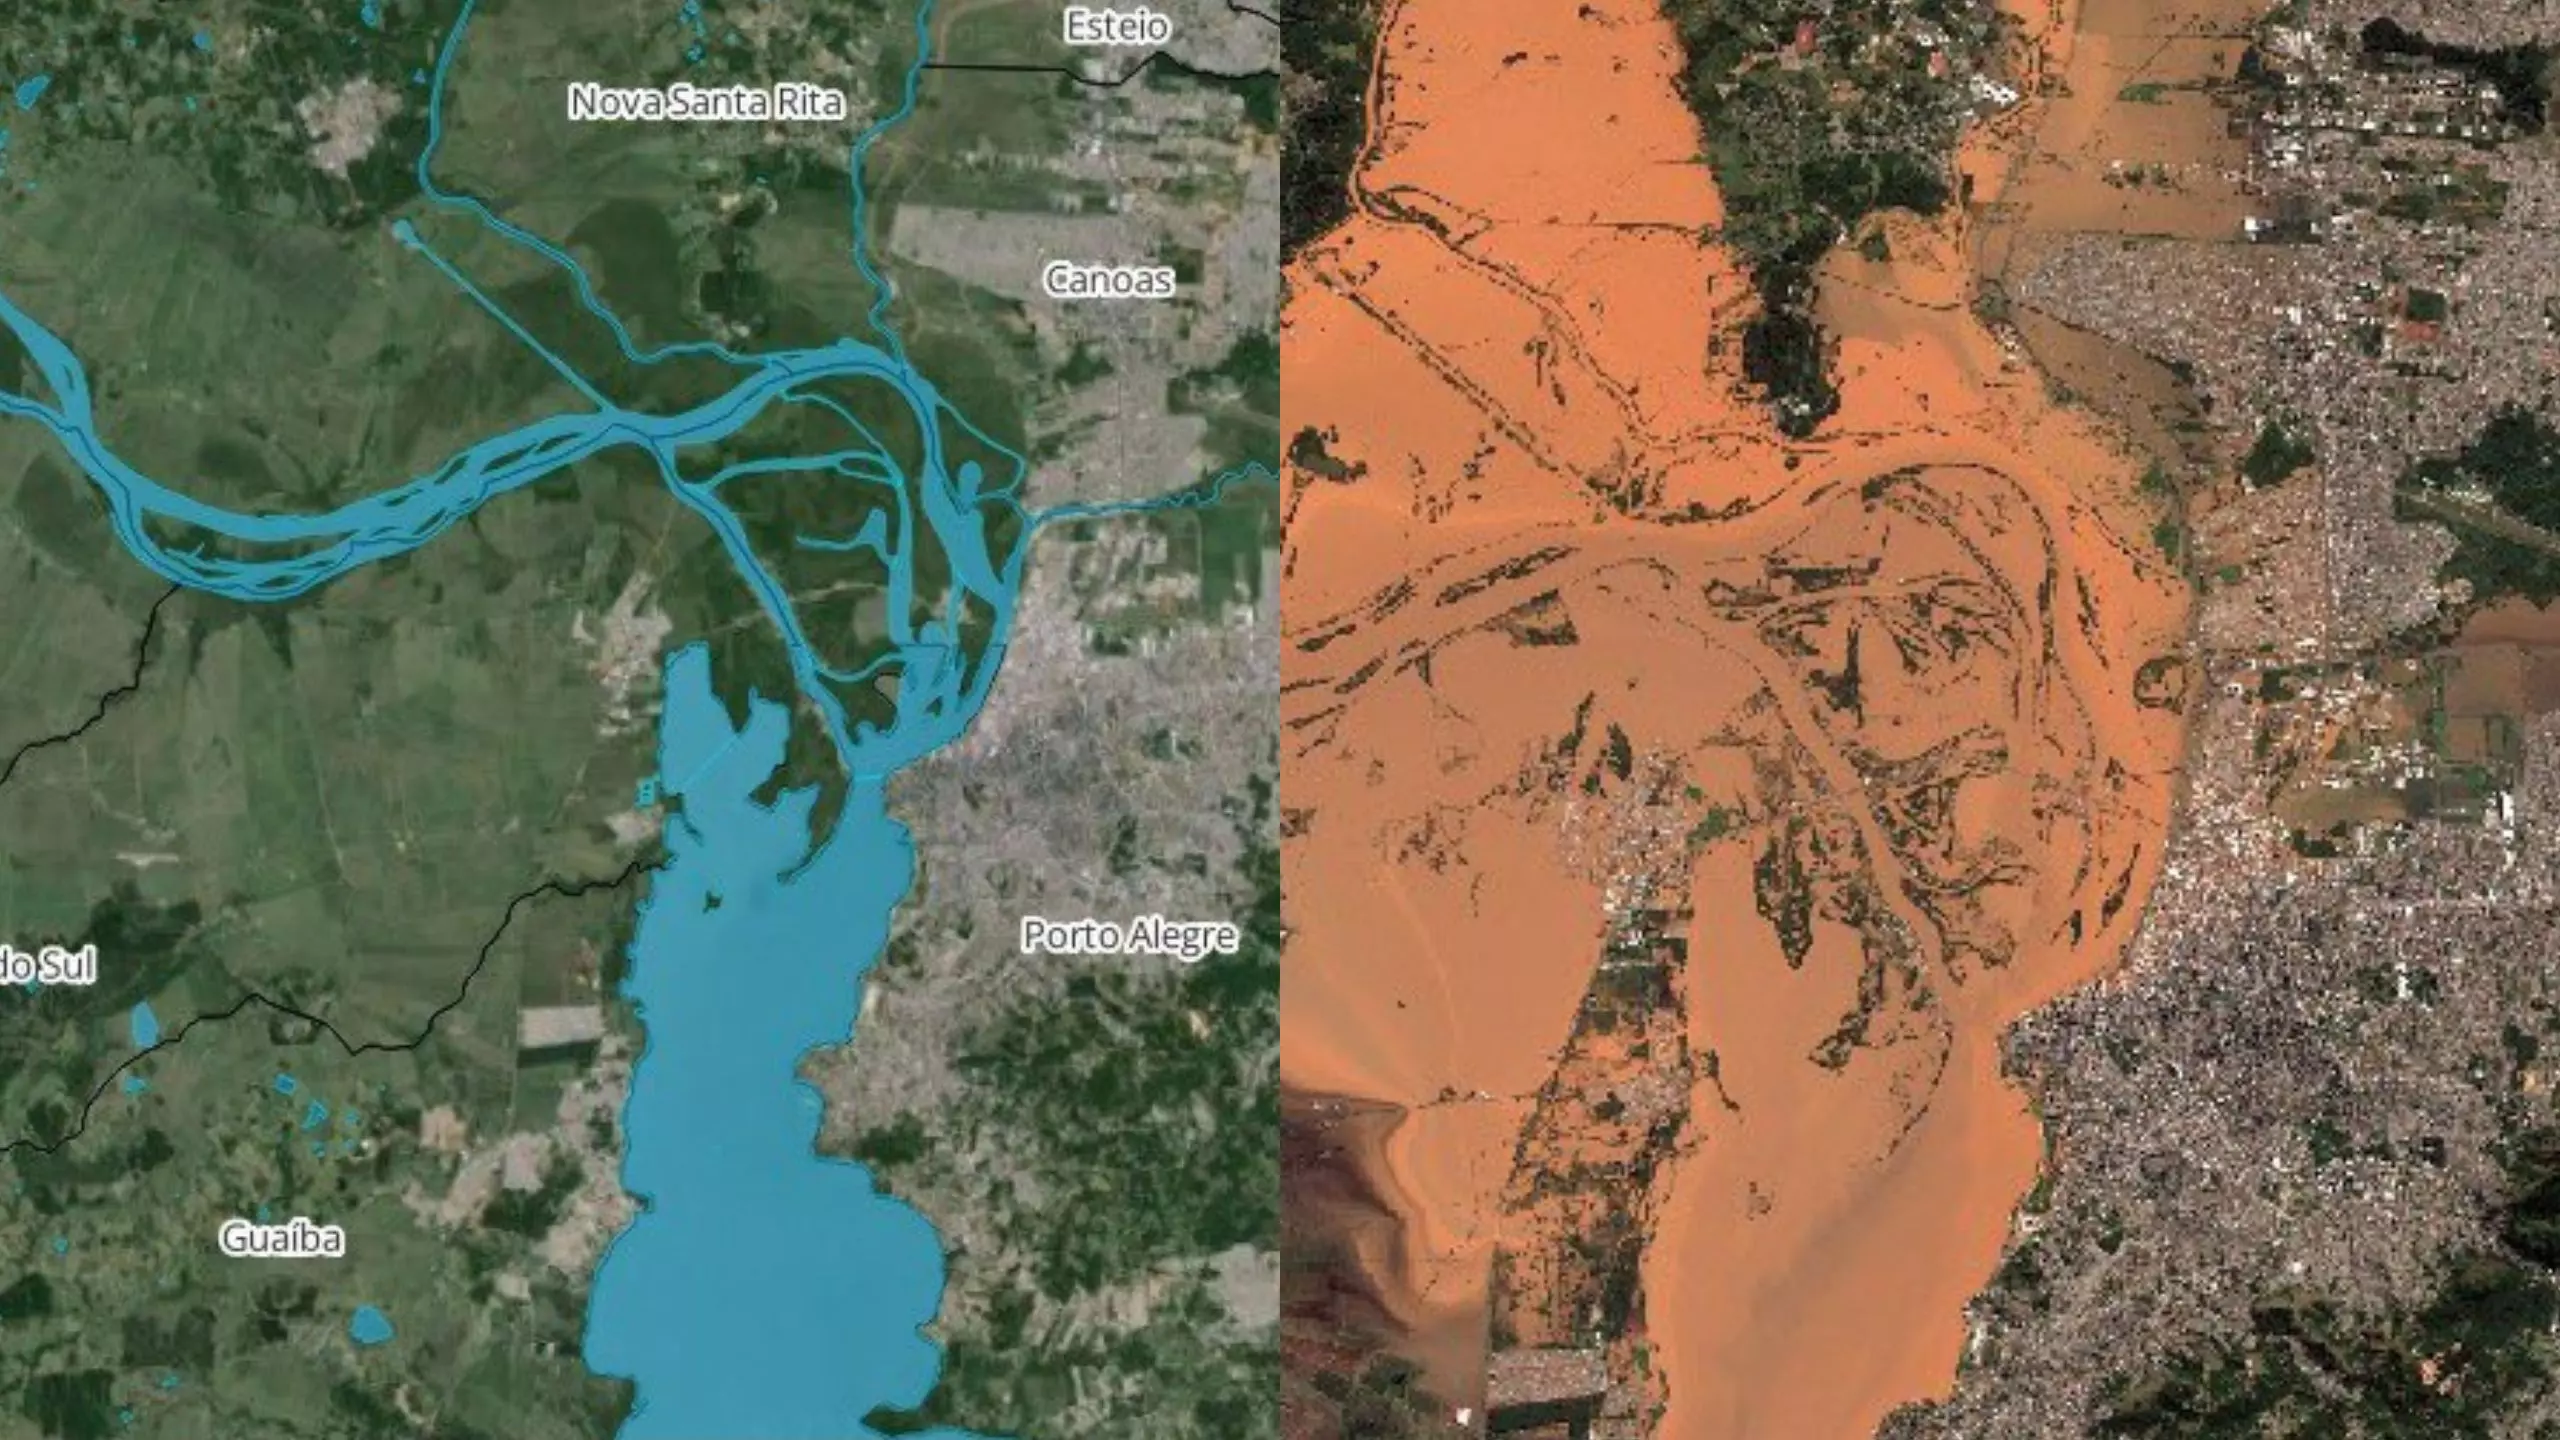 Imagens de satélite mostram "antes e durante" enchente em Porto Alegre - Foto: Reprodução/MetSul/X